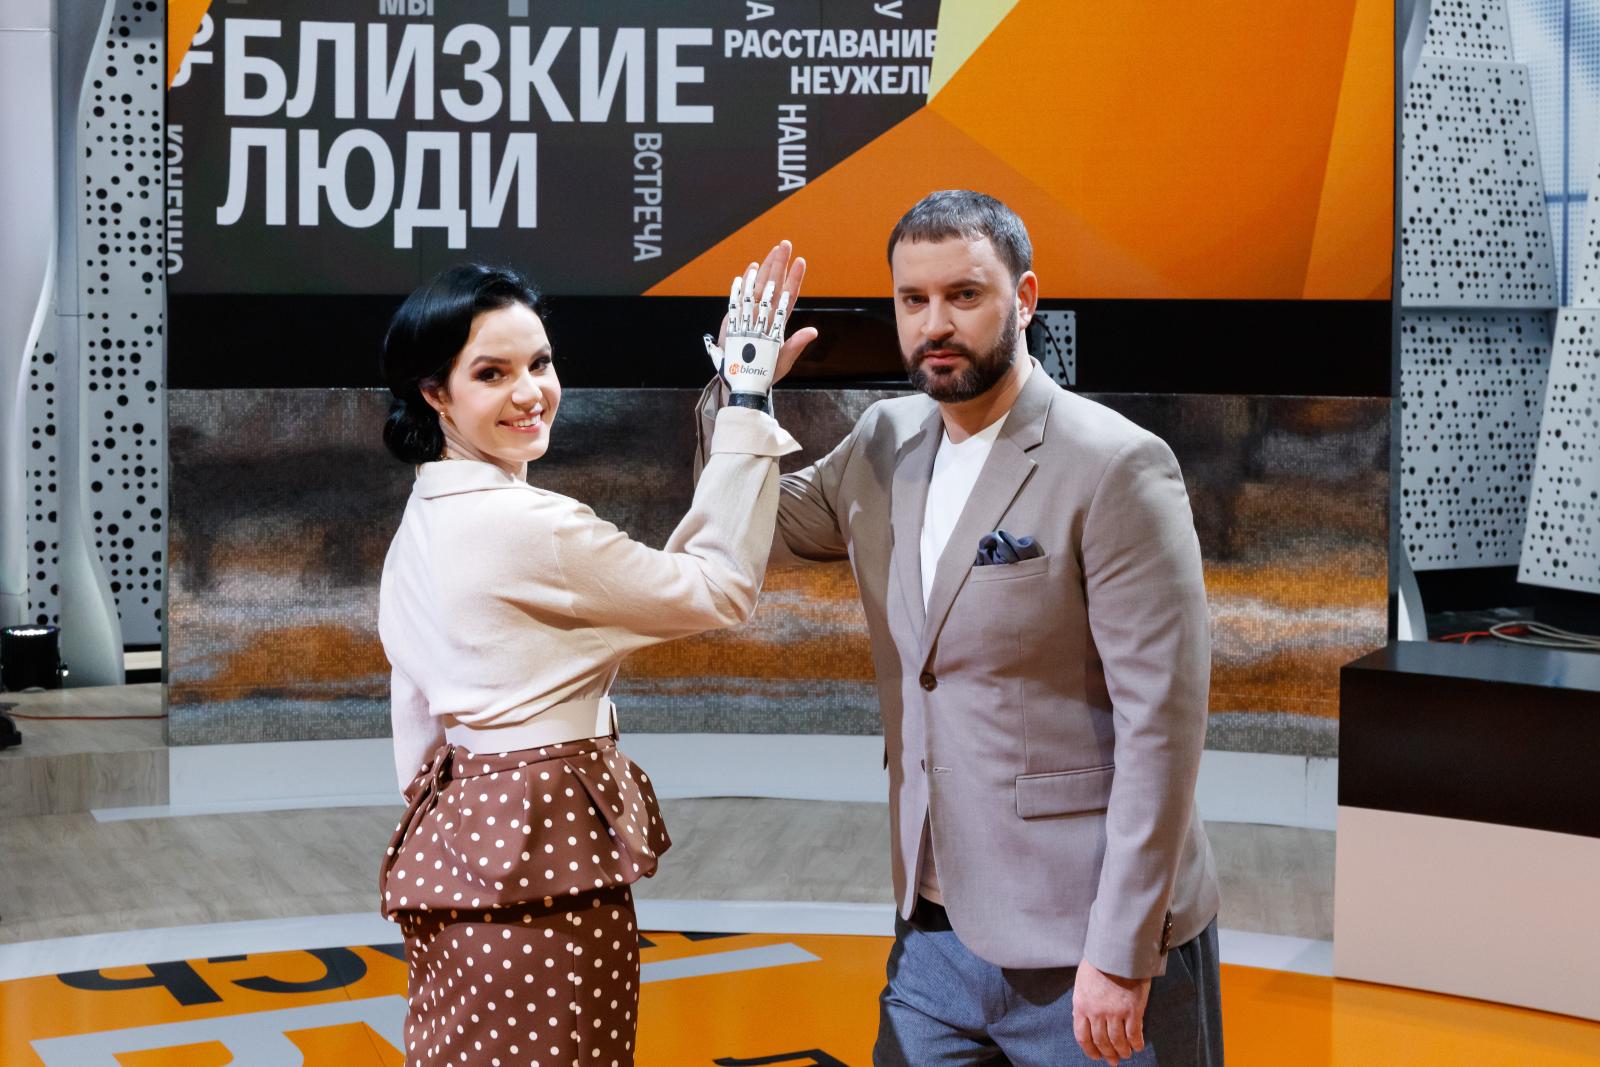 Маргарита Грачева, которой муж отрубил кисти рук, стала ведущей ток-шоу «Близкие люди» вместе с Леонидом Закошанским